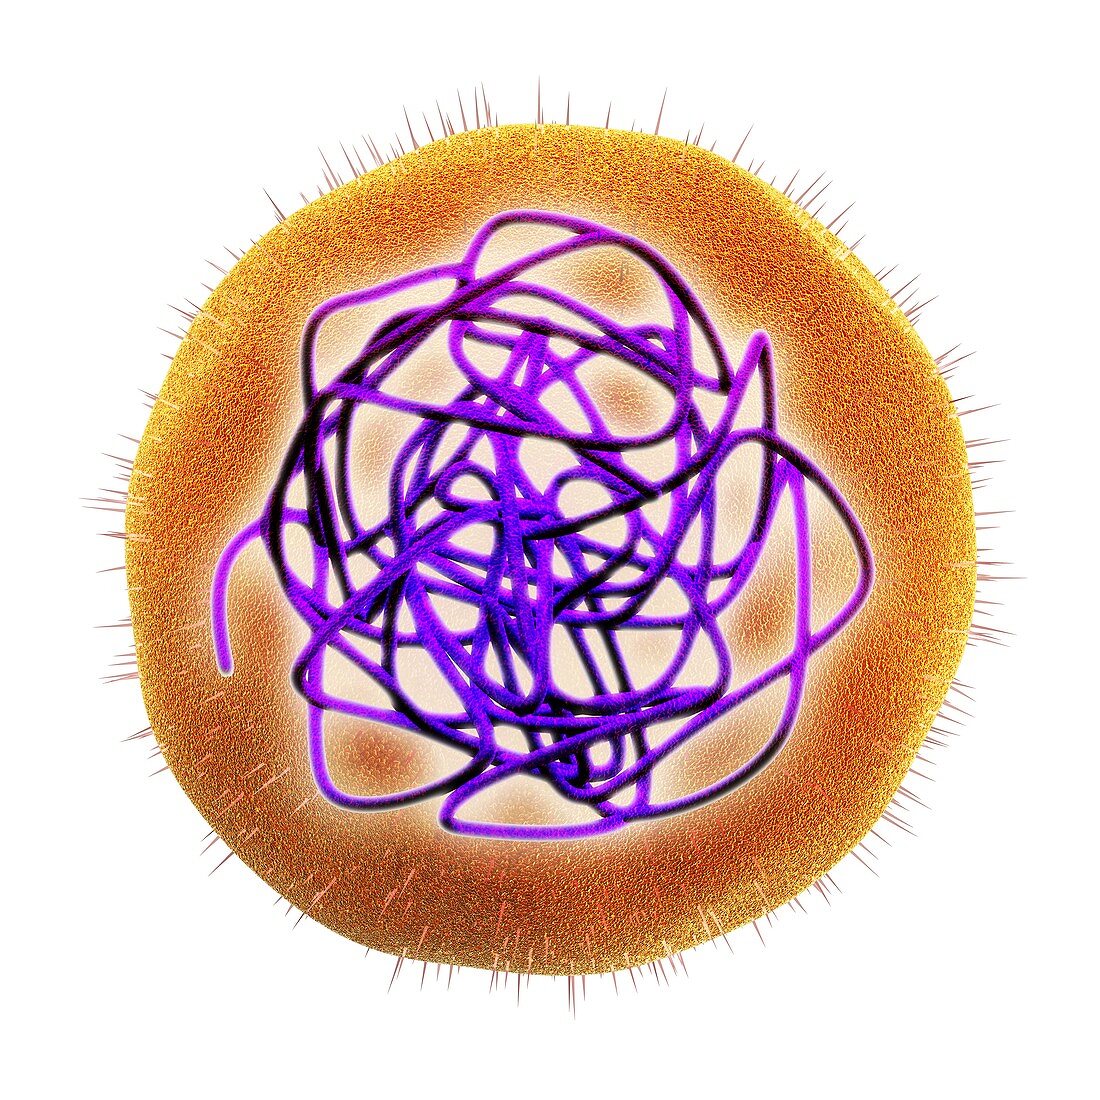 Rubella (German measles) virus,artwork